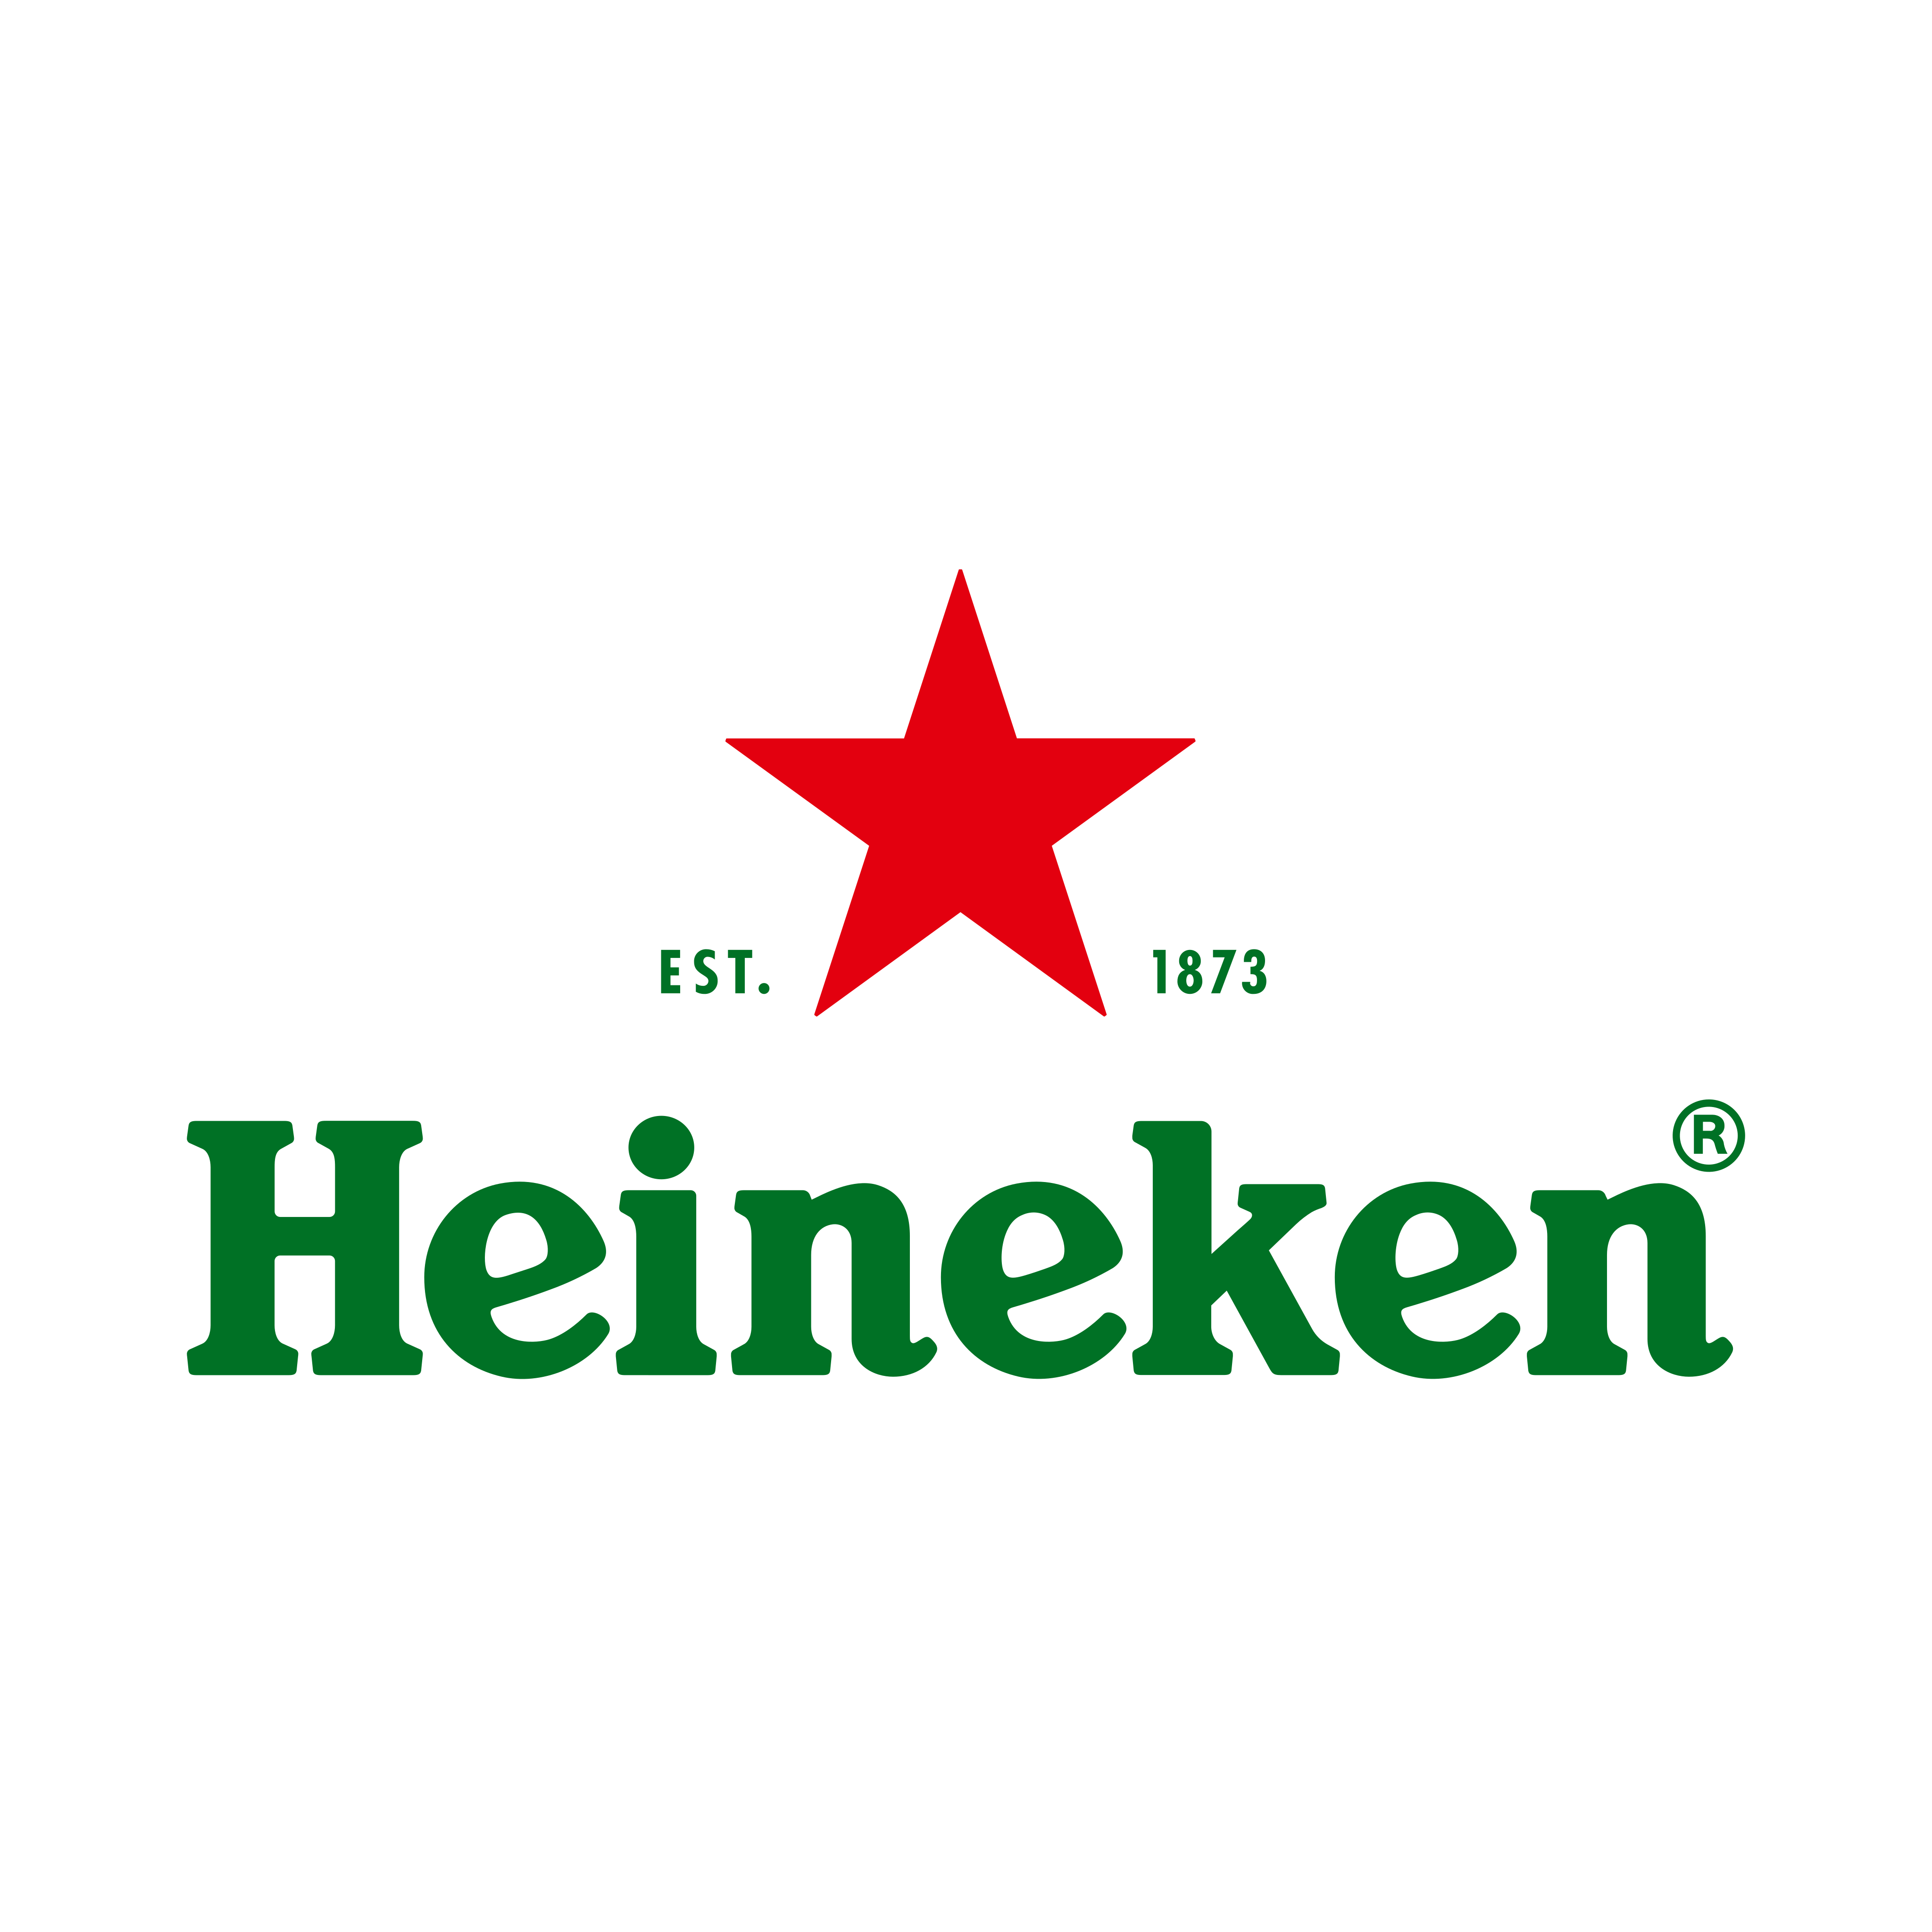 heineken logo 0 1 - Heineken Logo